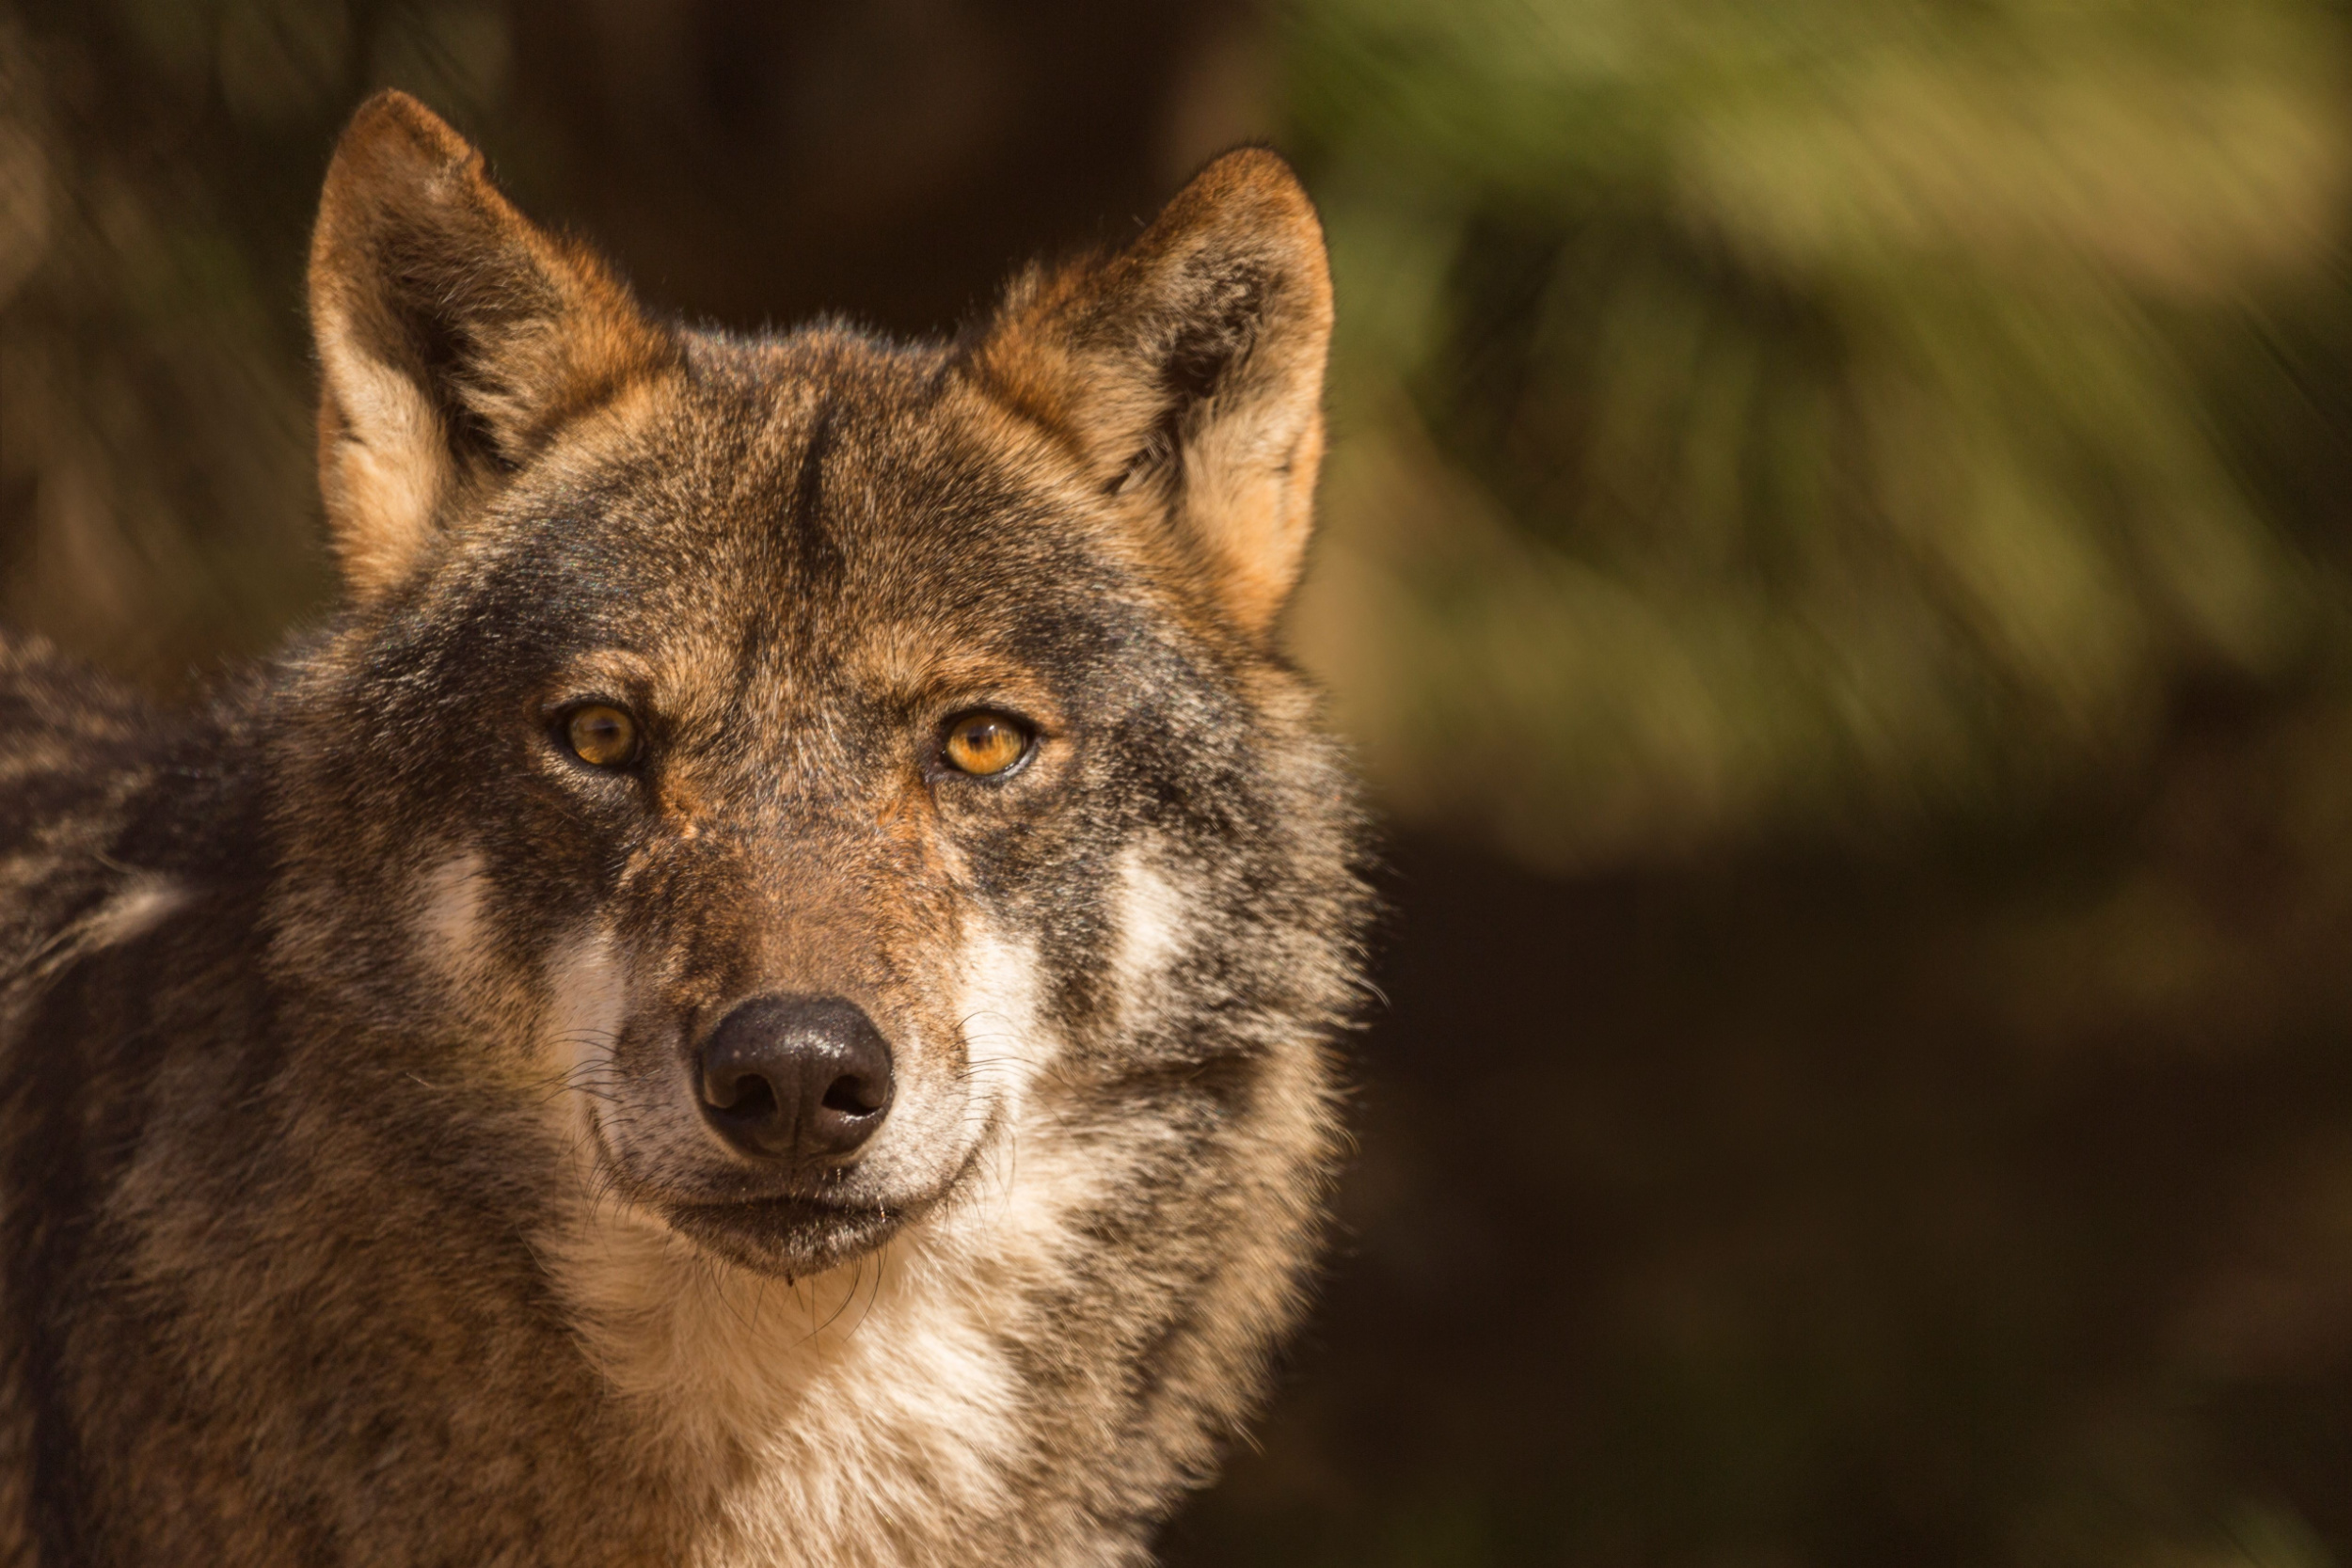 Wilk iberyjski, populacja wilków